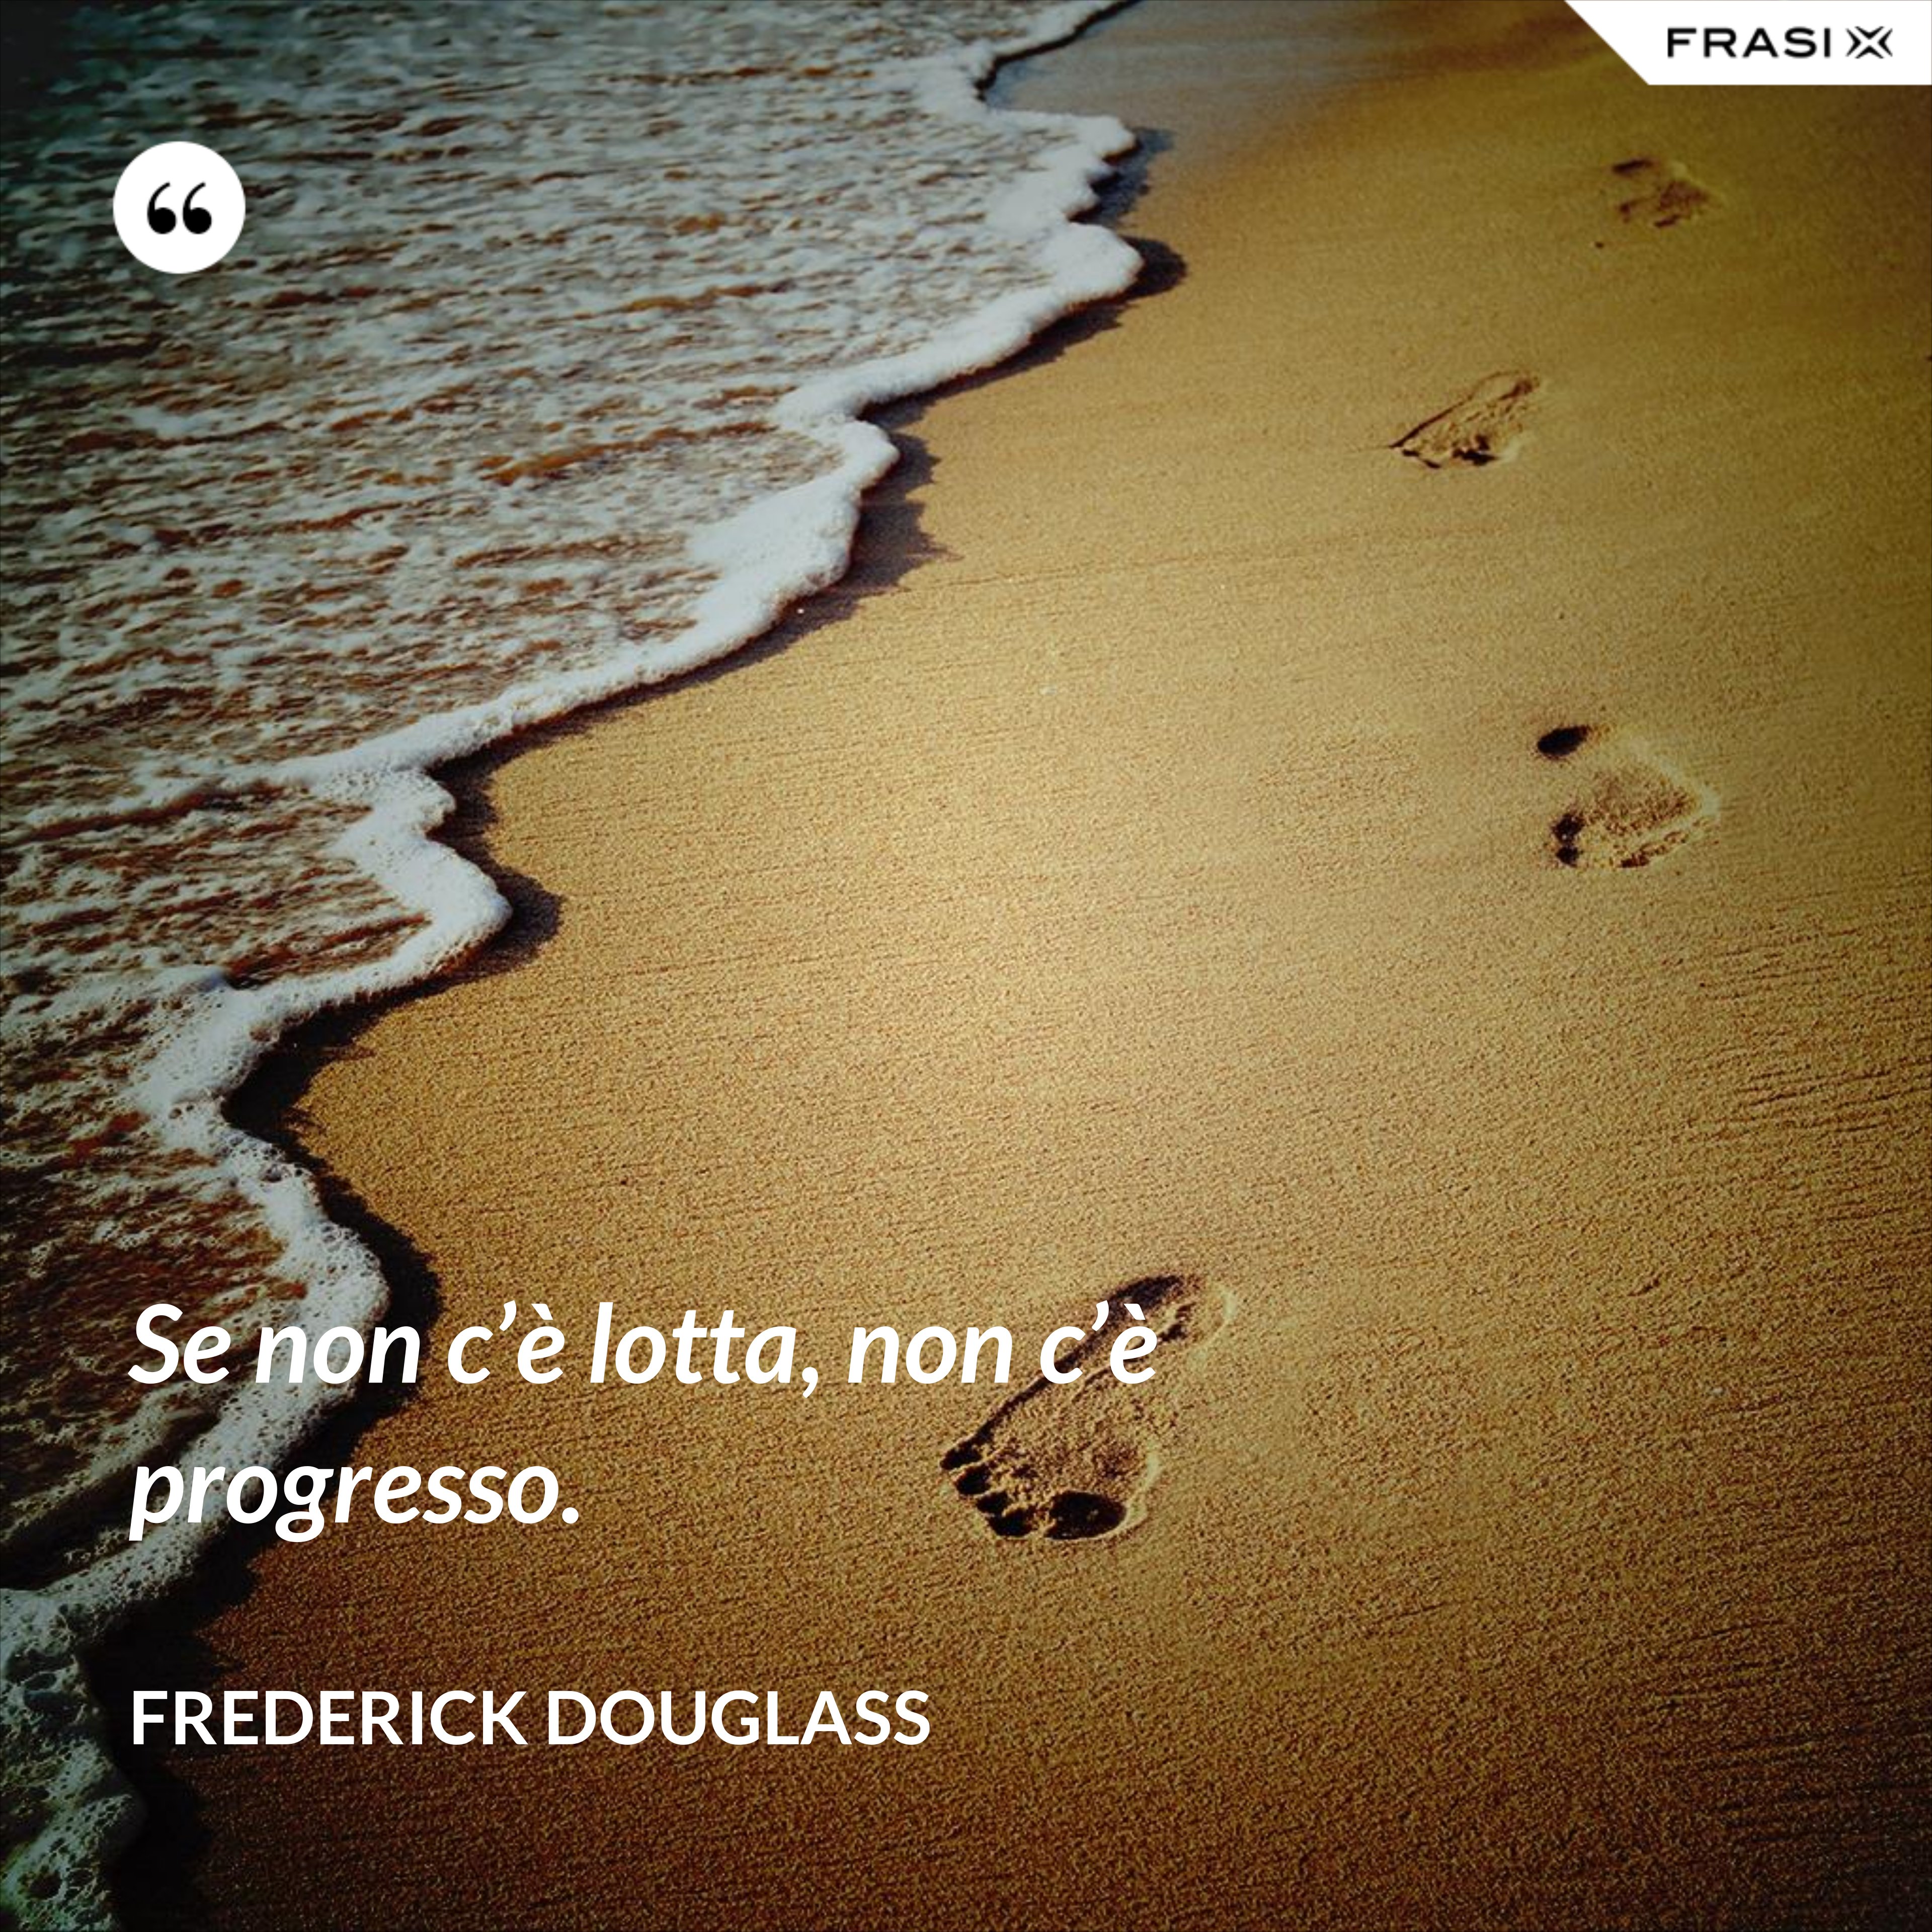 Se non c’è lotta, non c’è progresso. - Frederick Douglass